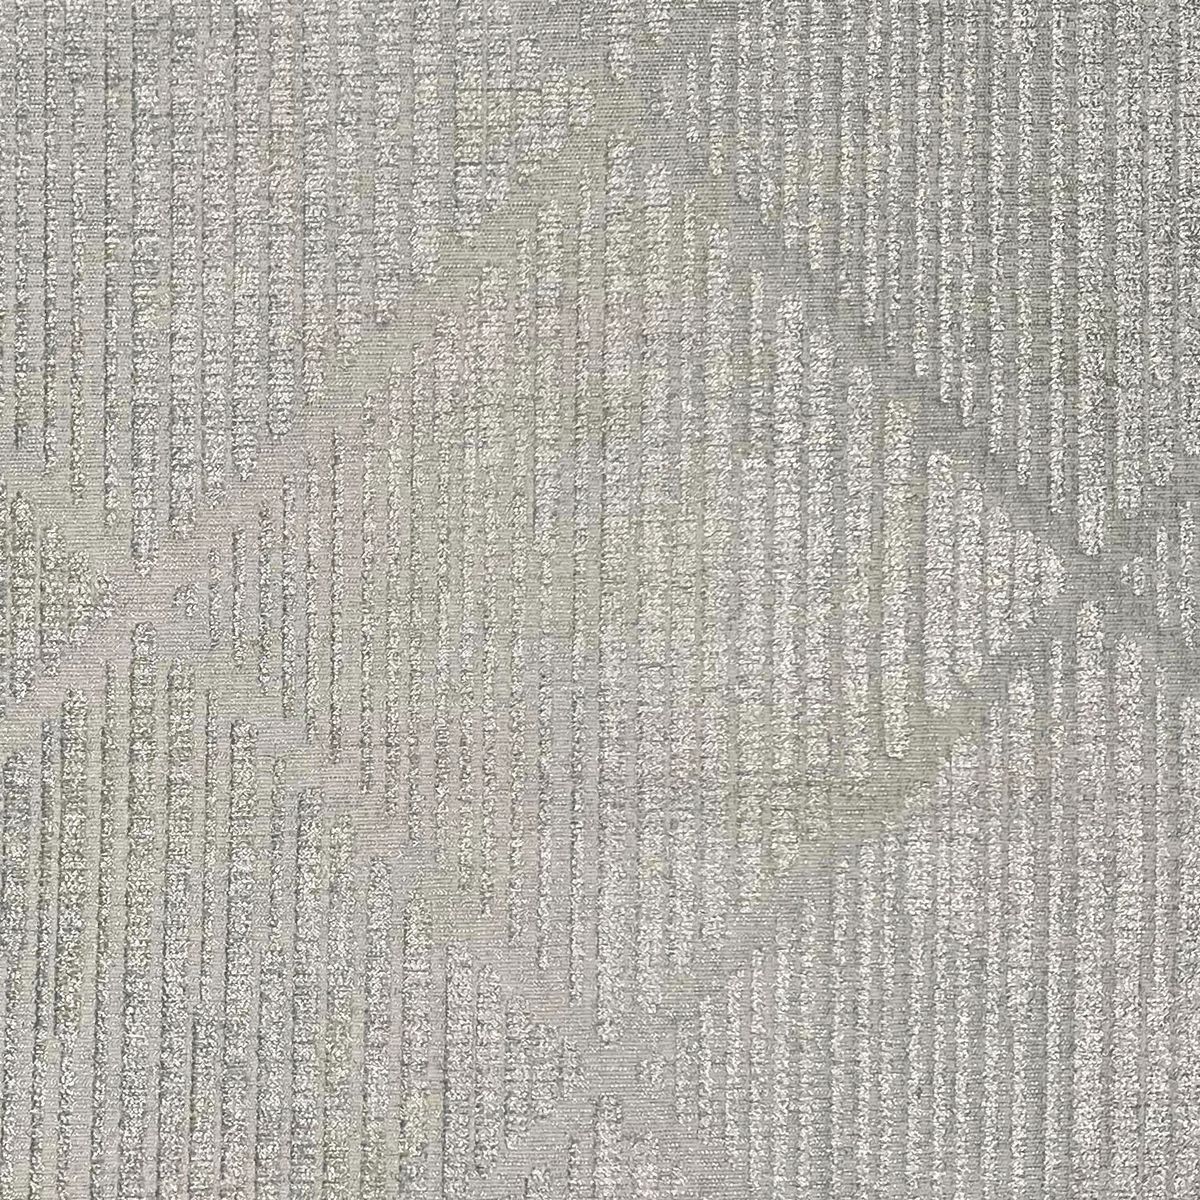 Shaftesbury Pearl Fabric by Chatham Glyn